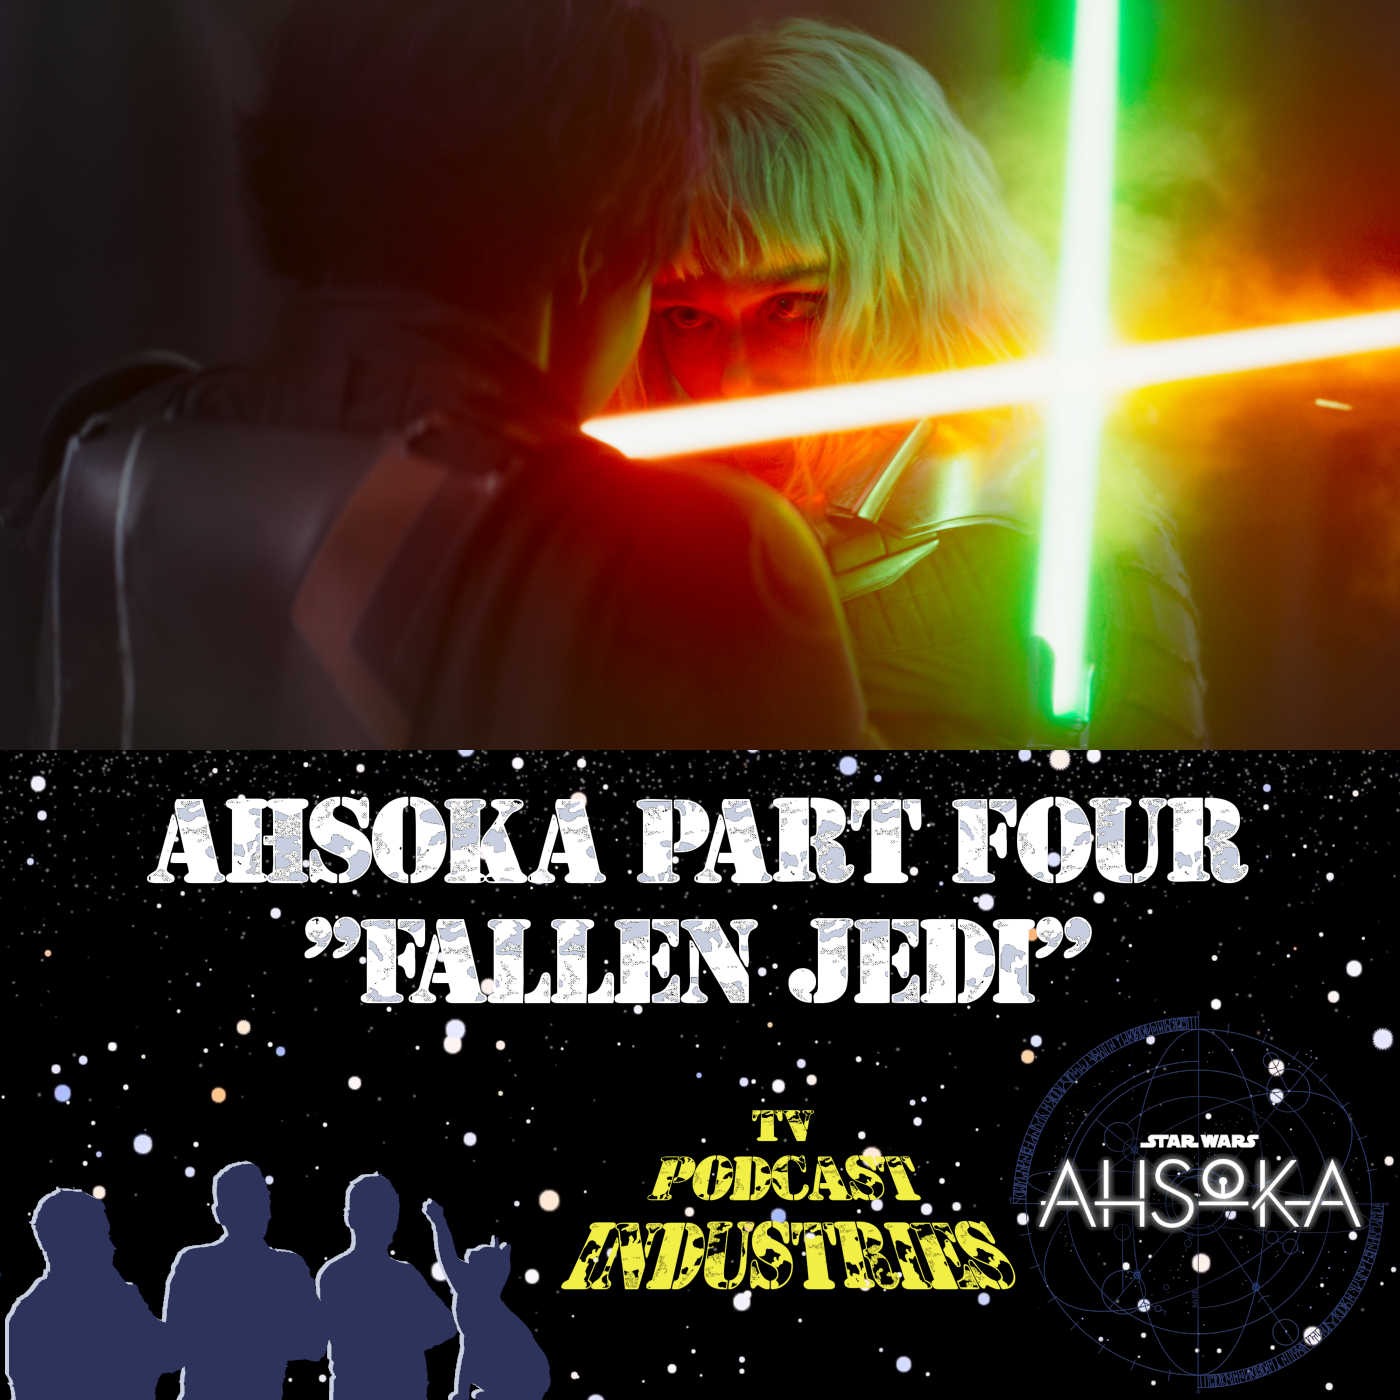 Ahsoka Part 4 "Fallen Jedi"